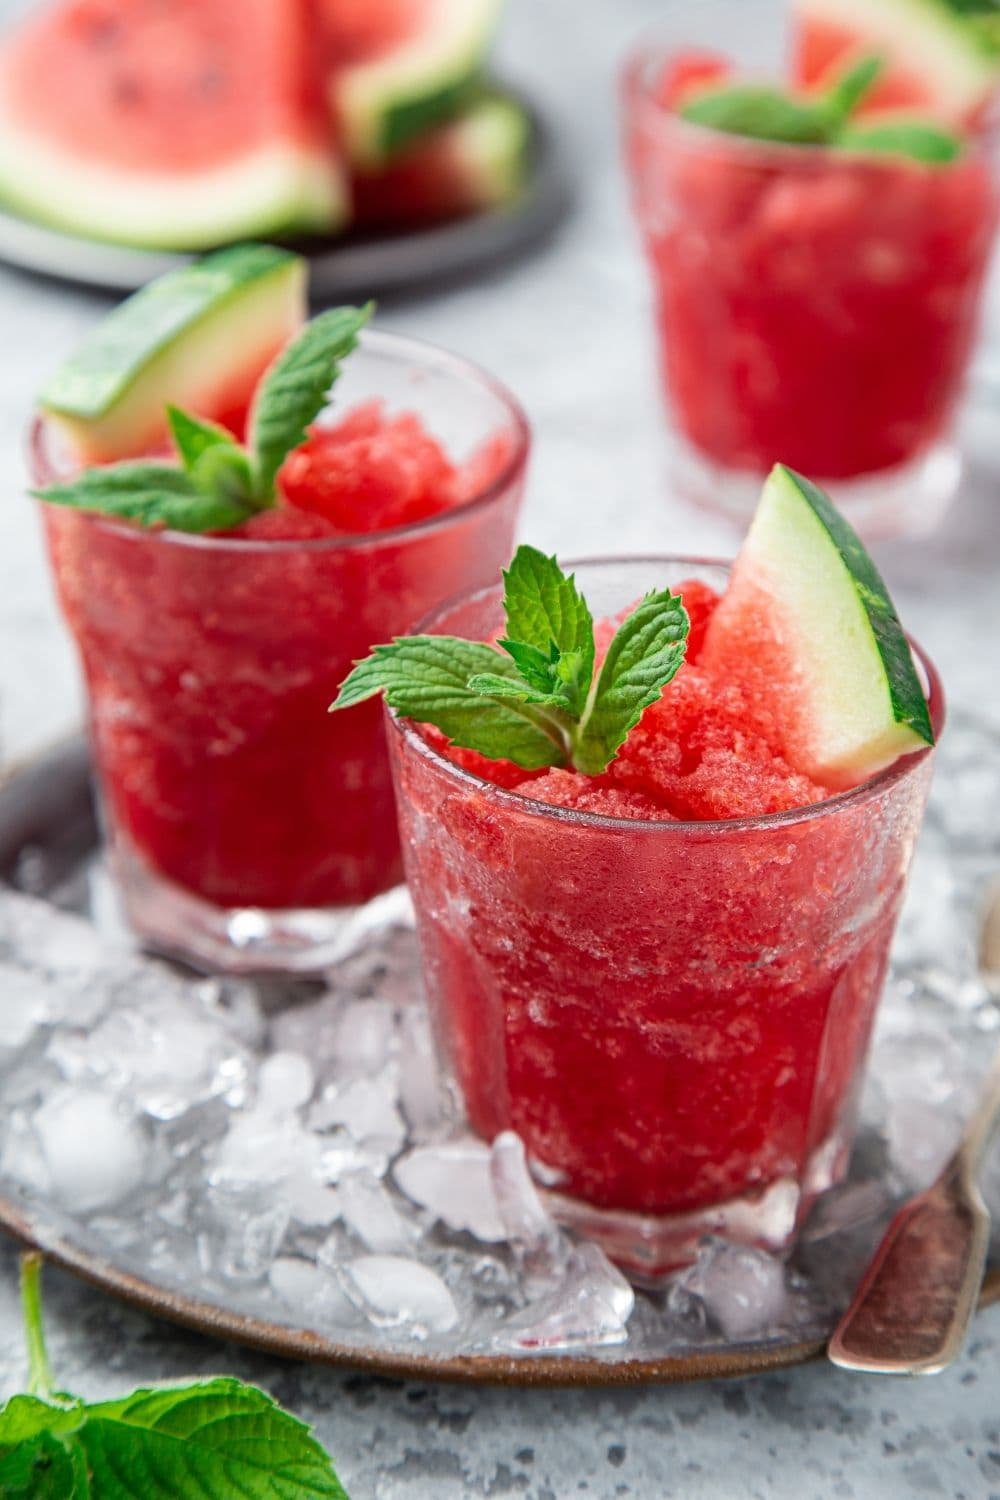 25 Best Watermelon Desserts - Insanely Good